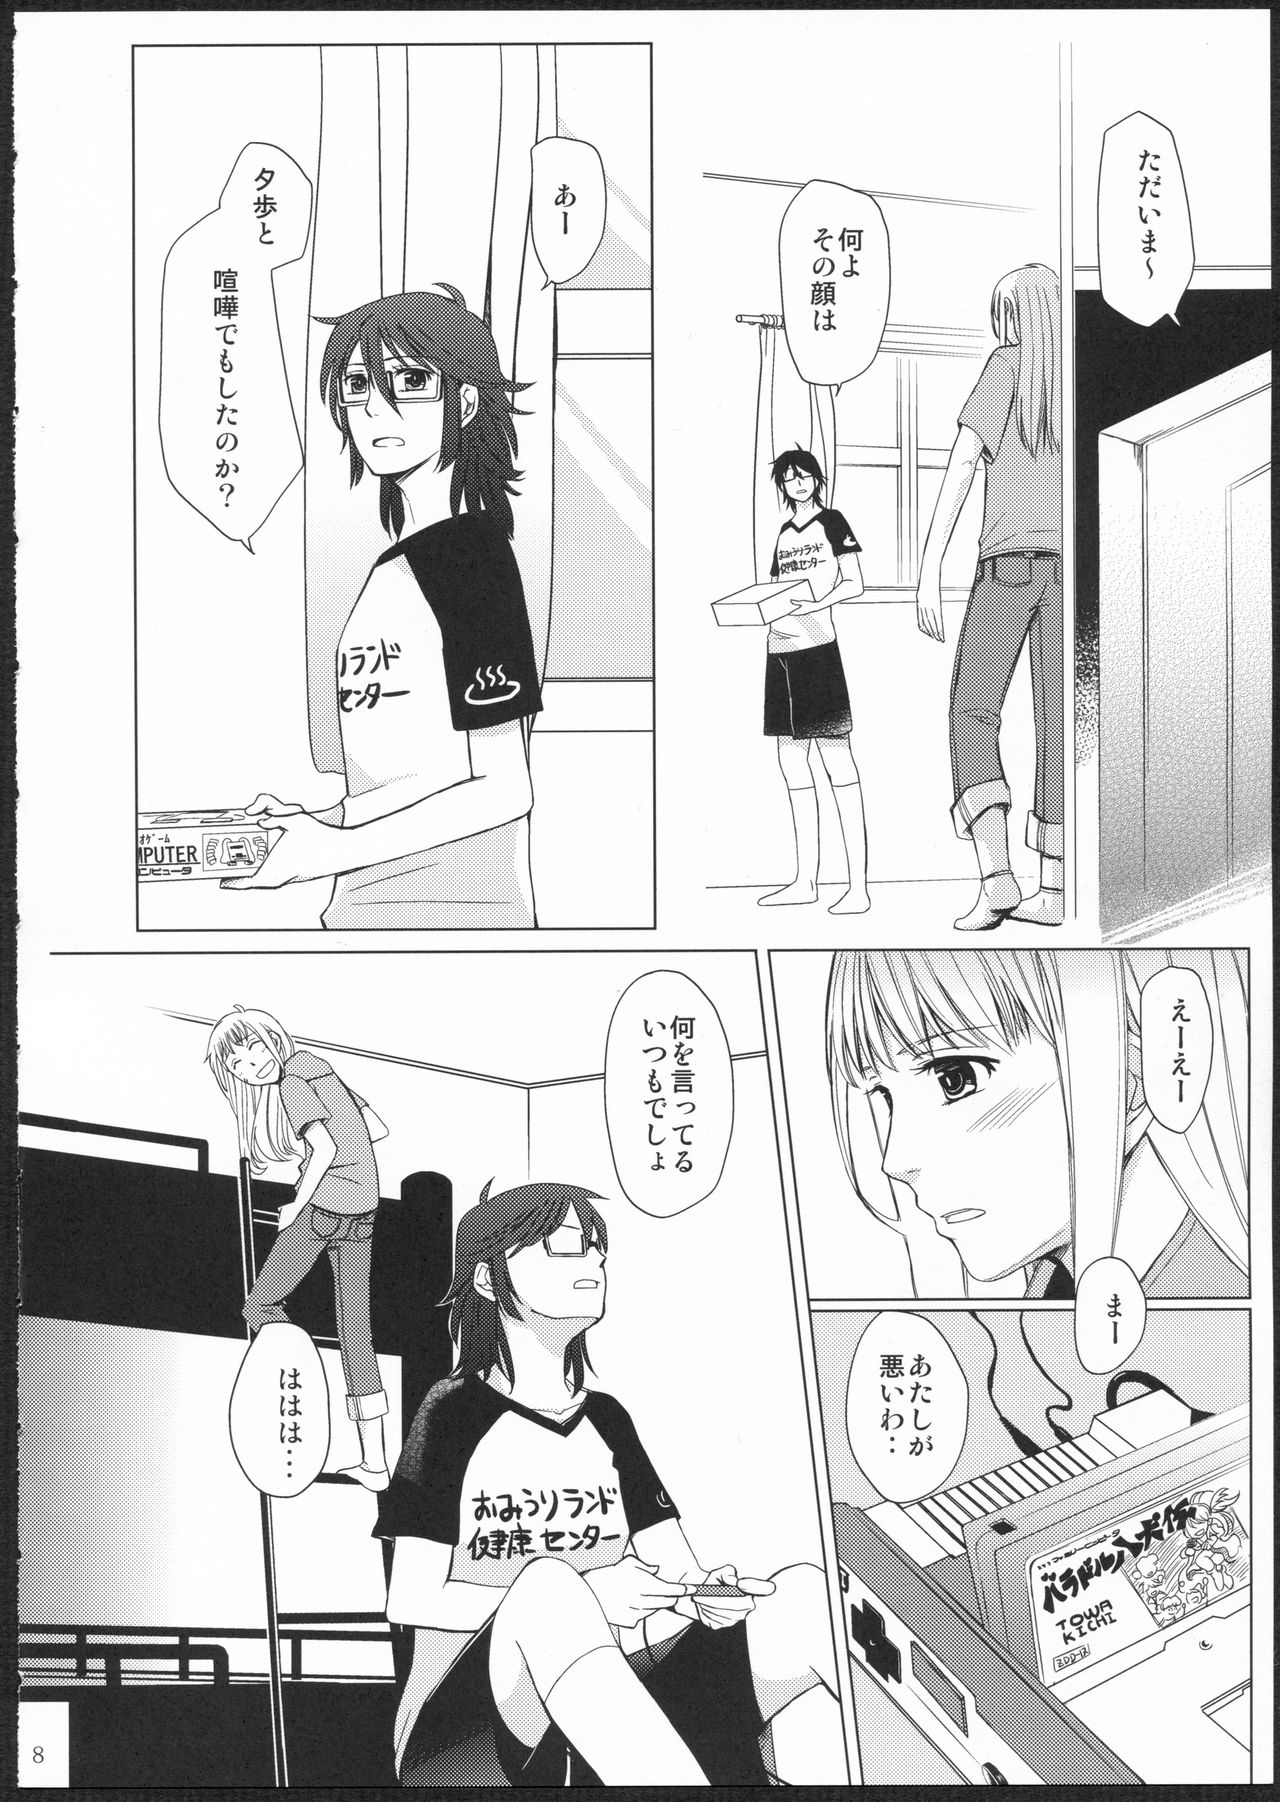 (GirlsLoveFestival11) [No.3 (Kamonasu, Sakuraba, Yuyuki)] METEORA (Hayate x Blade) 6